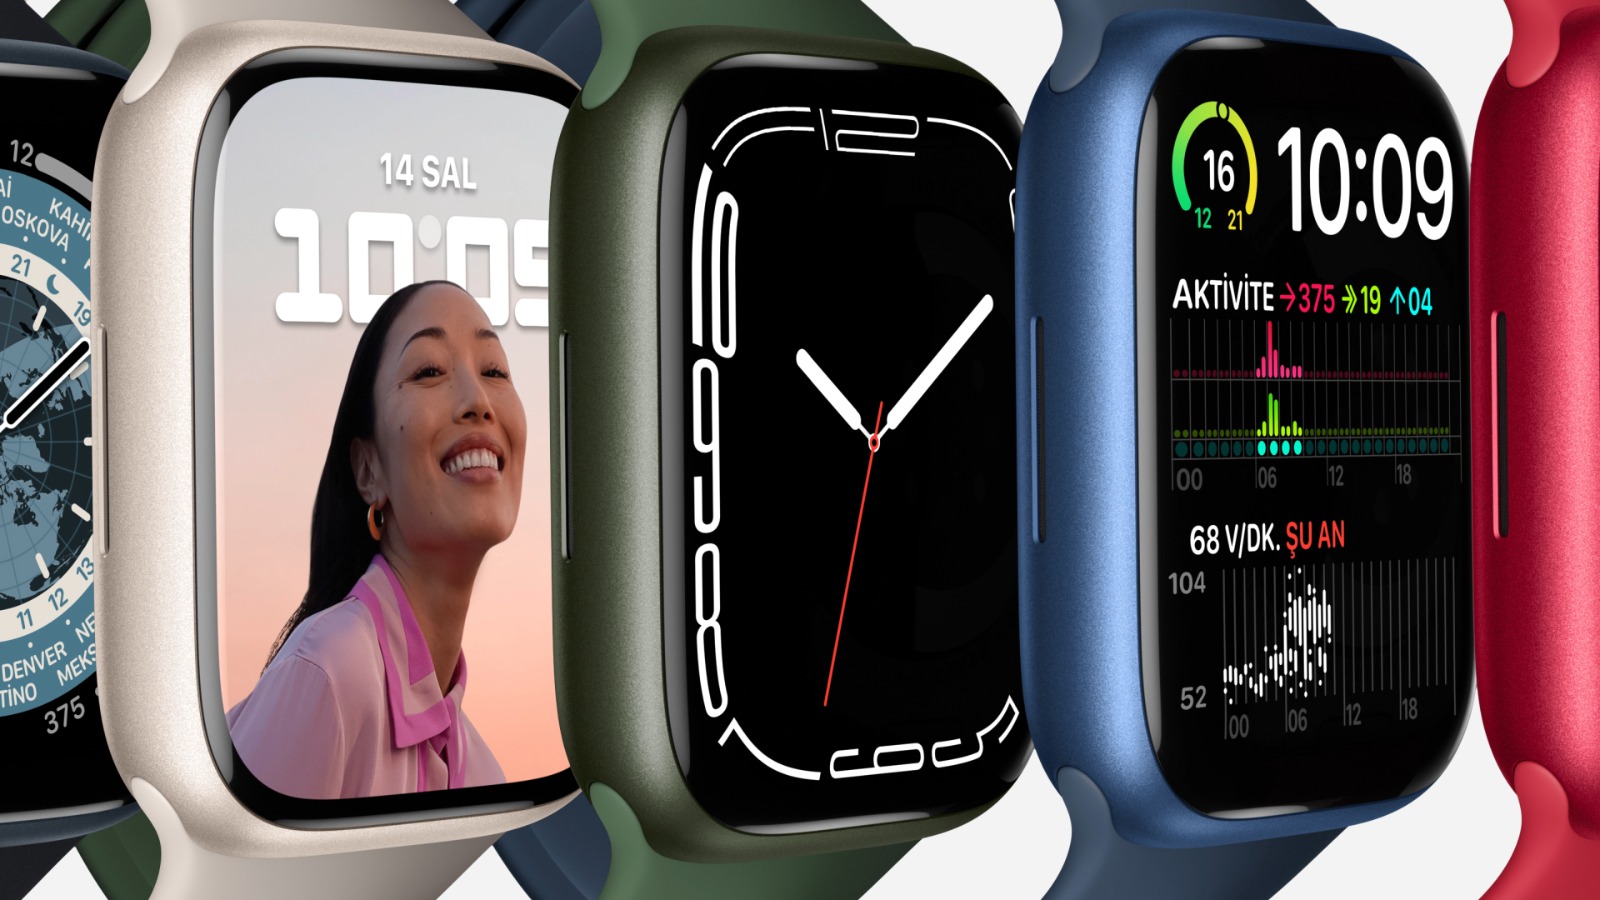 Apple Watch Series 7 GPS + Cellular, 41mm Gümüş Paslanmaz Çelik Kasa ve Gümüş Milano Loop - MKHX3TU/A